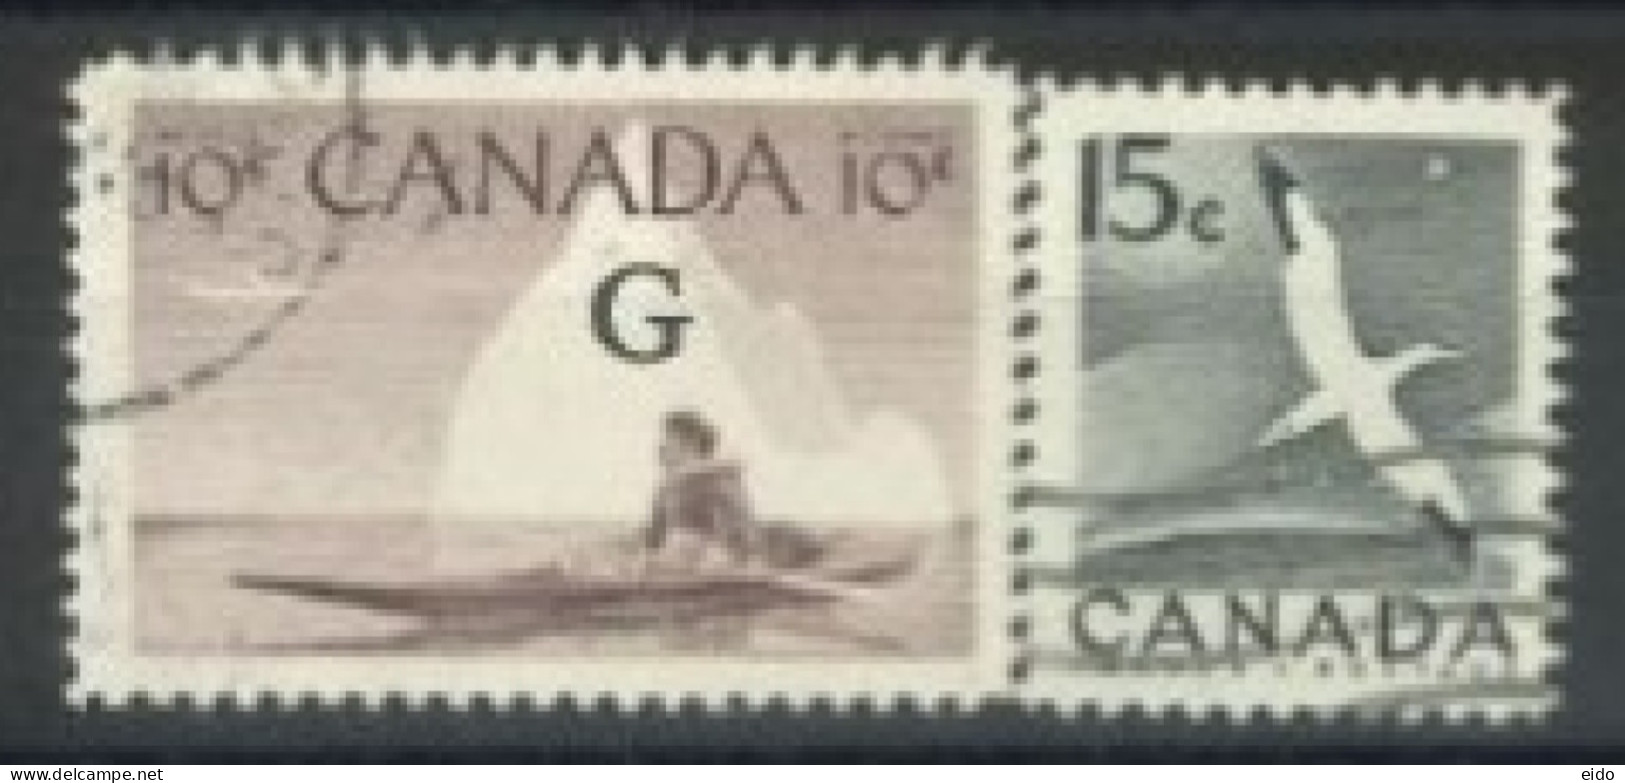 CANADA - 1953, ESKIMO HUNTER & NORTHERN GANNET STAMPS SET OF 2, USED. - Oblitérés